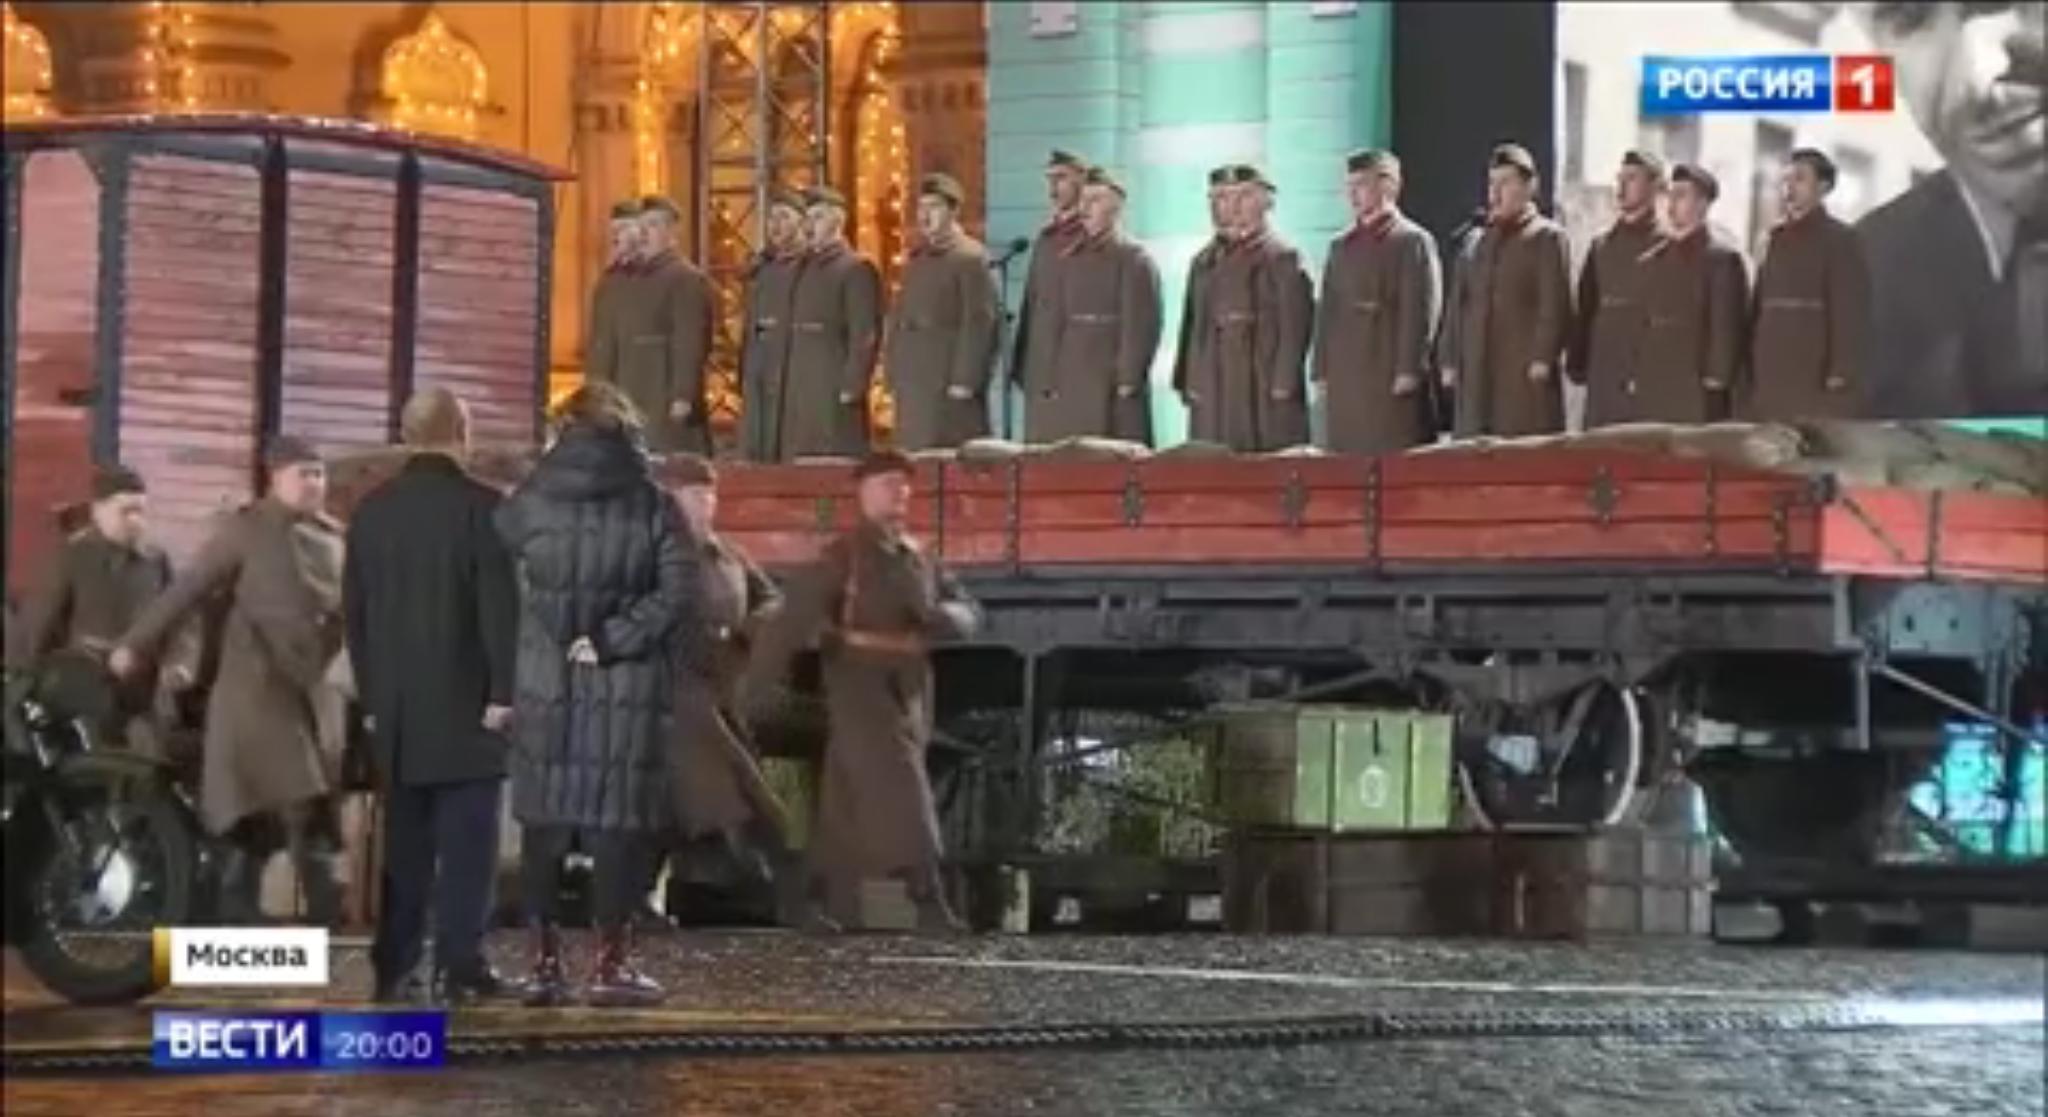 Puto stoi przed szeregiem maszerujących i śpiewających żołnierzy